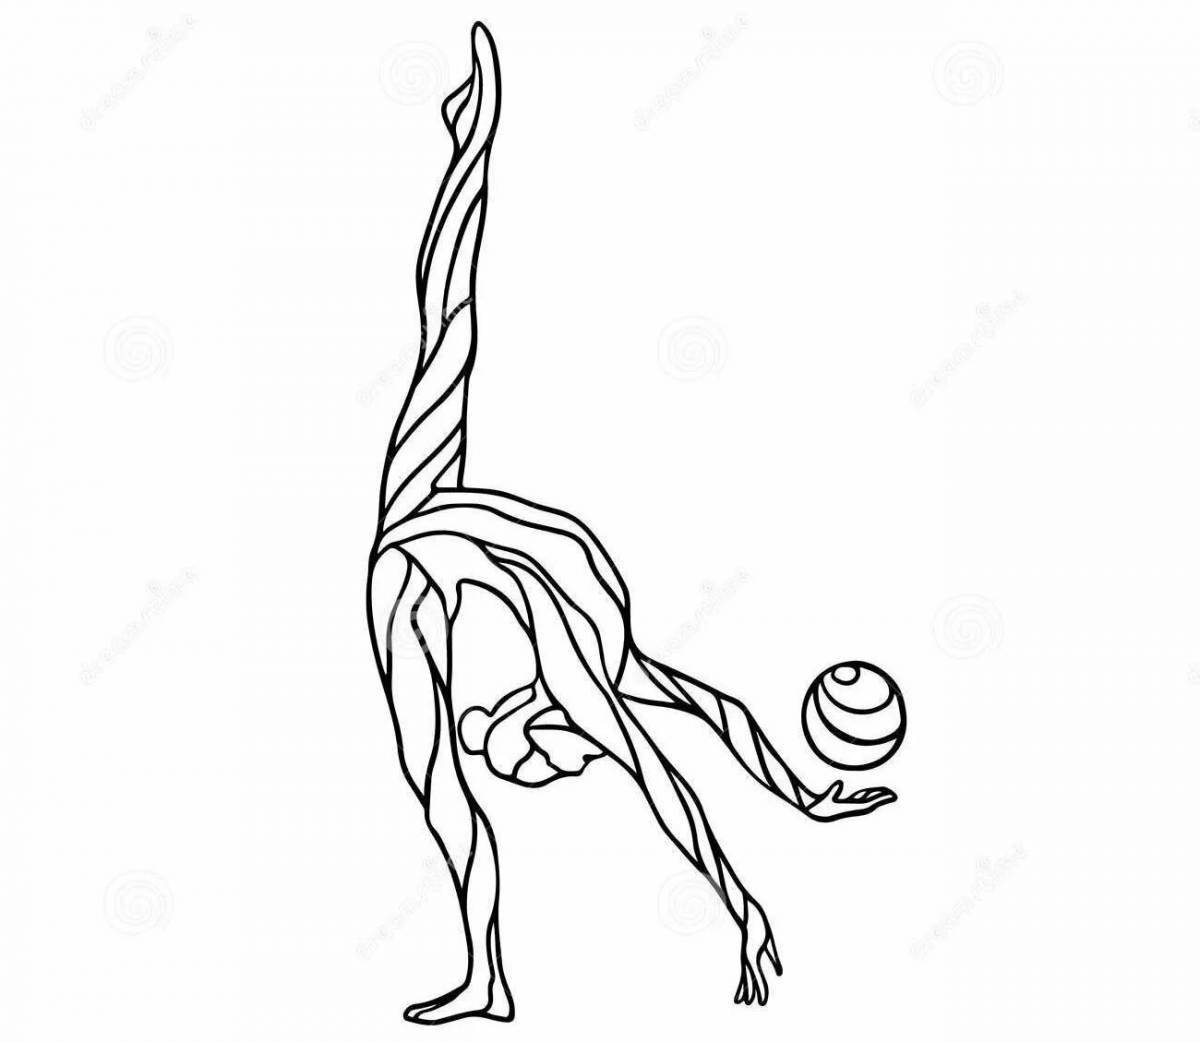 Элегантная гимнастка с булавами